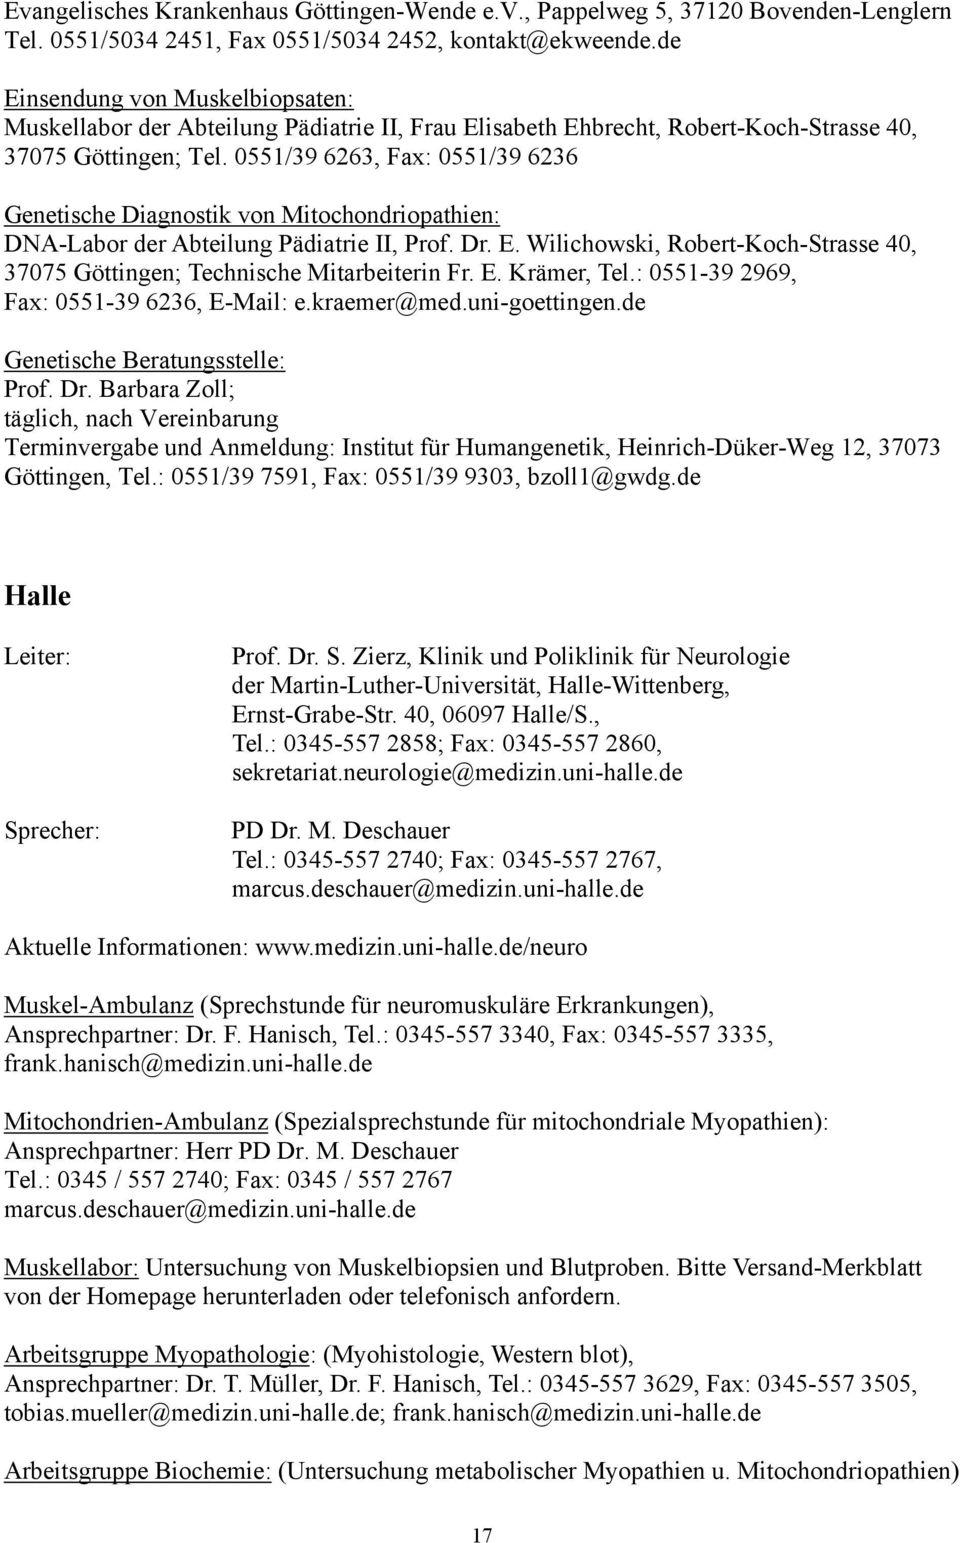 0551/39 6263, Fax: 0551/39 6236 Genetische Diagnostik von Mitochondriopathien: DNA-Labor der Abteilung Pädiatrie II, Prof. Dr. E.